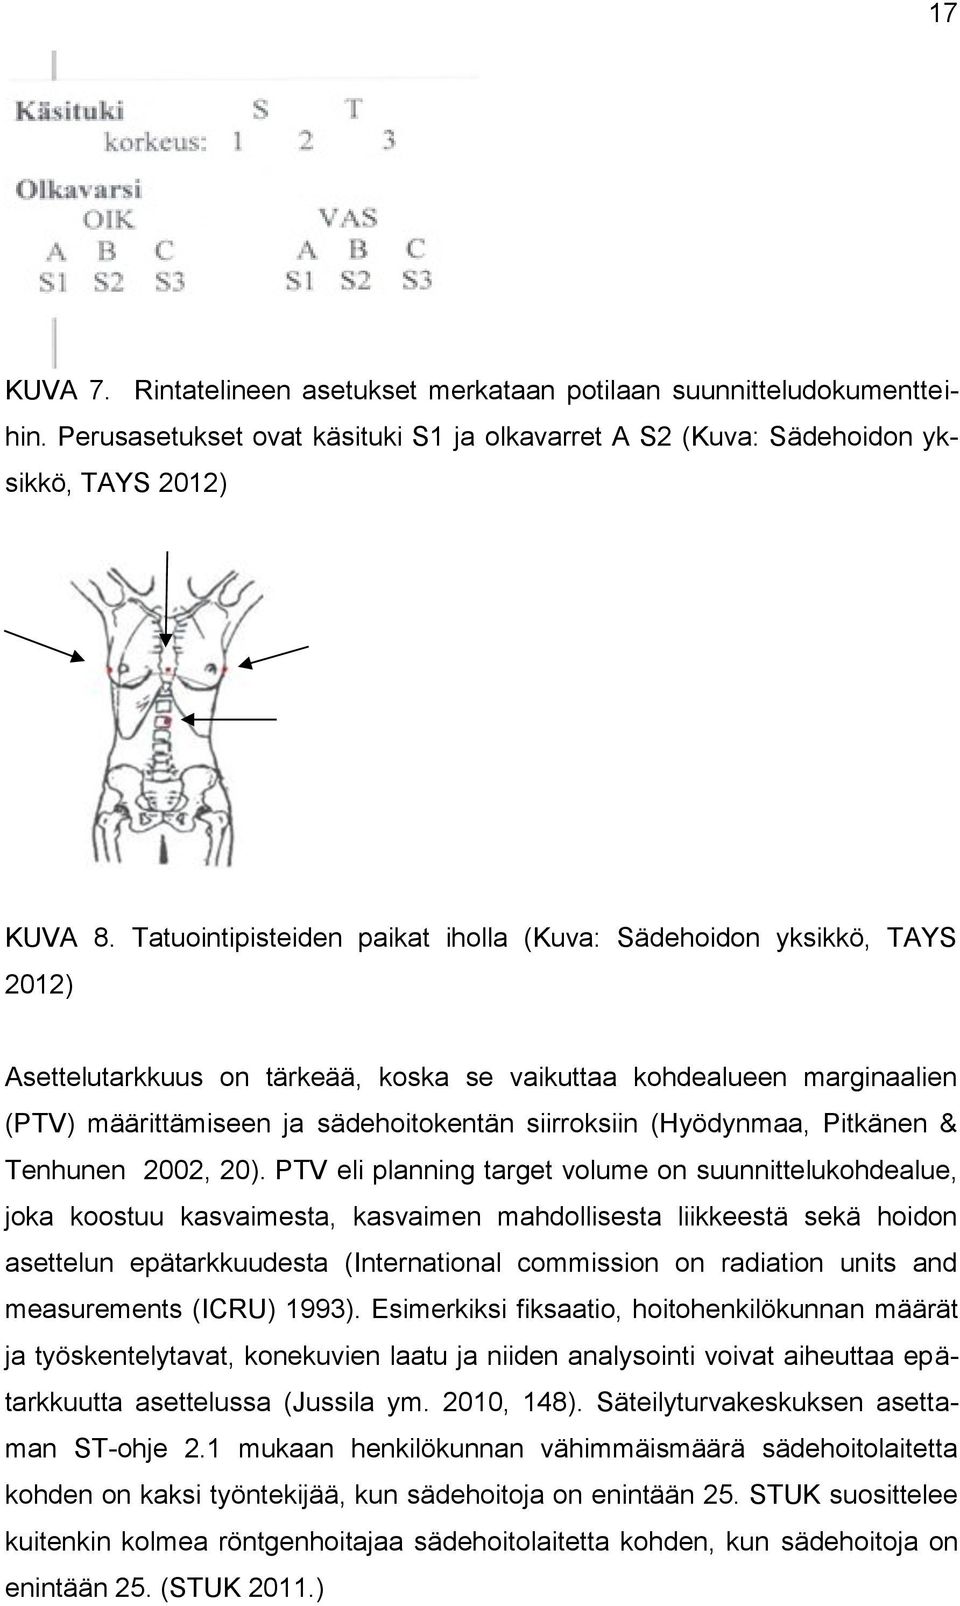 (Hyödynmaa, Pitkänen & Tenhunen 2002, 20).